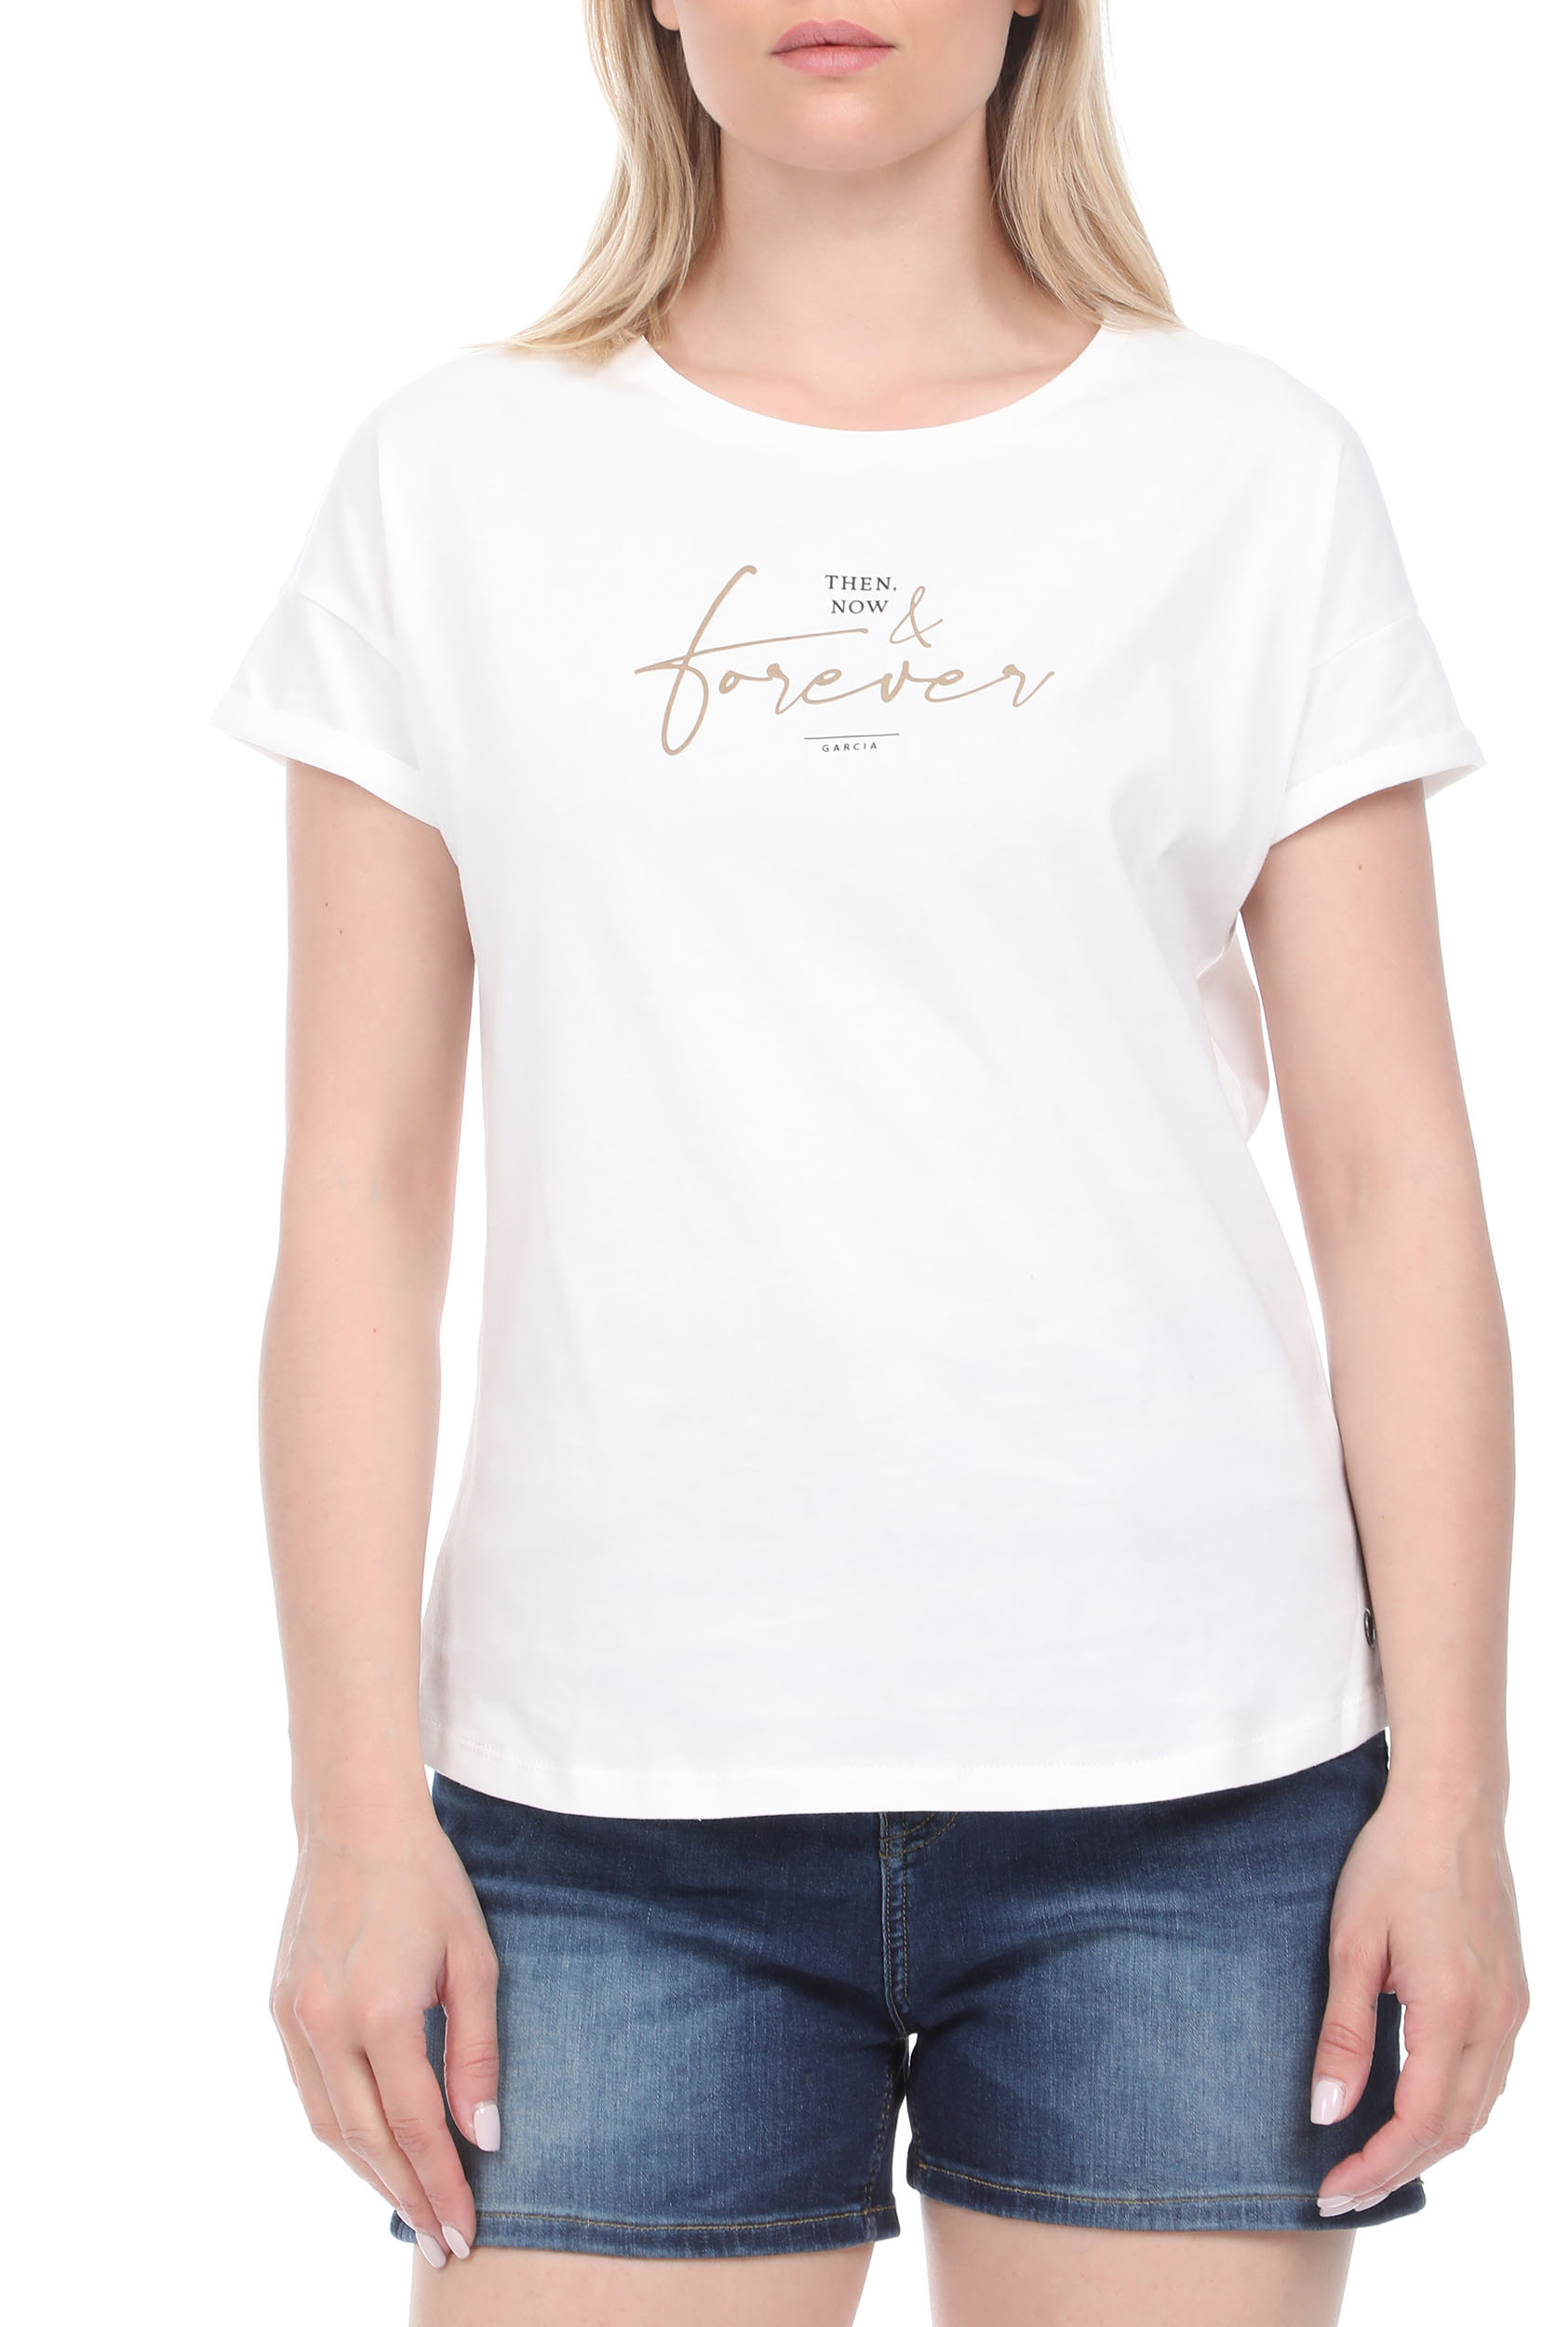 Γυναικεία/Ρούχα/Μπλούζες/Κοντομάνικες GARCIA JEANS - Γυναικεία μπλούζα GARCIA JEANS λευκή